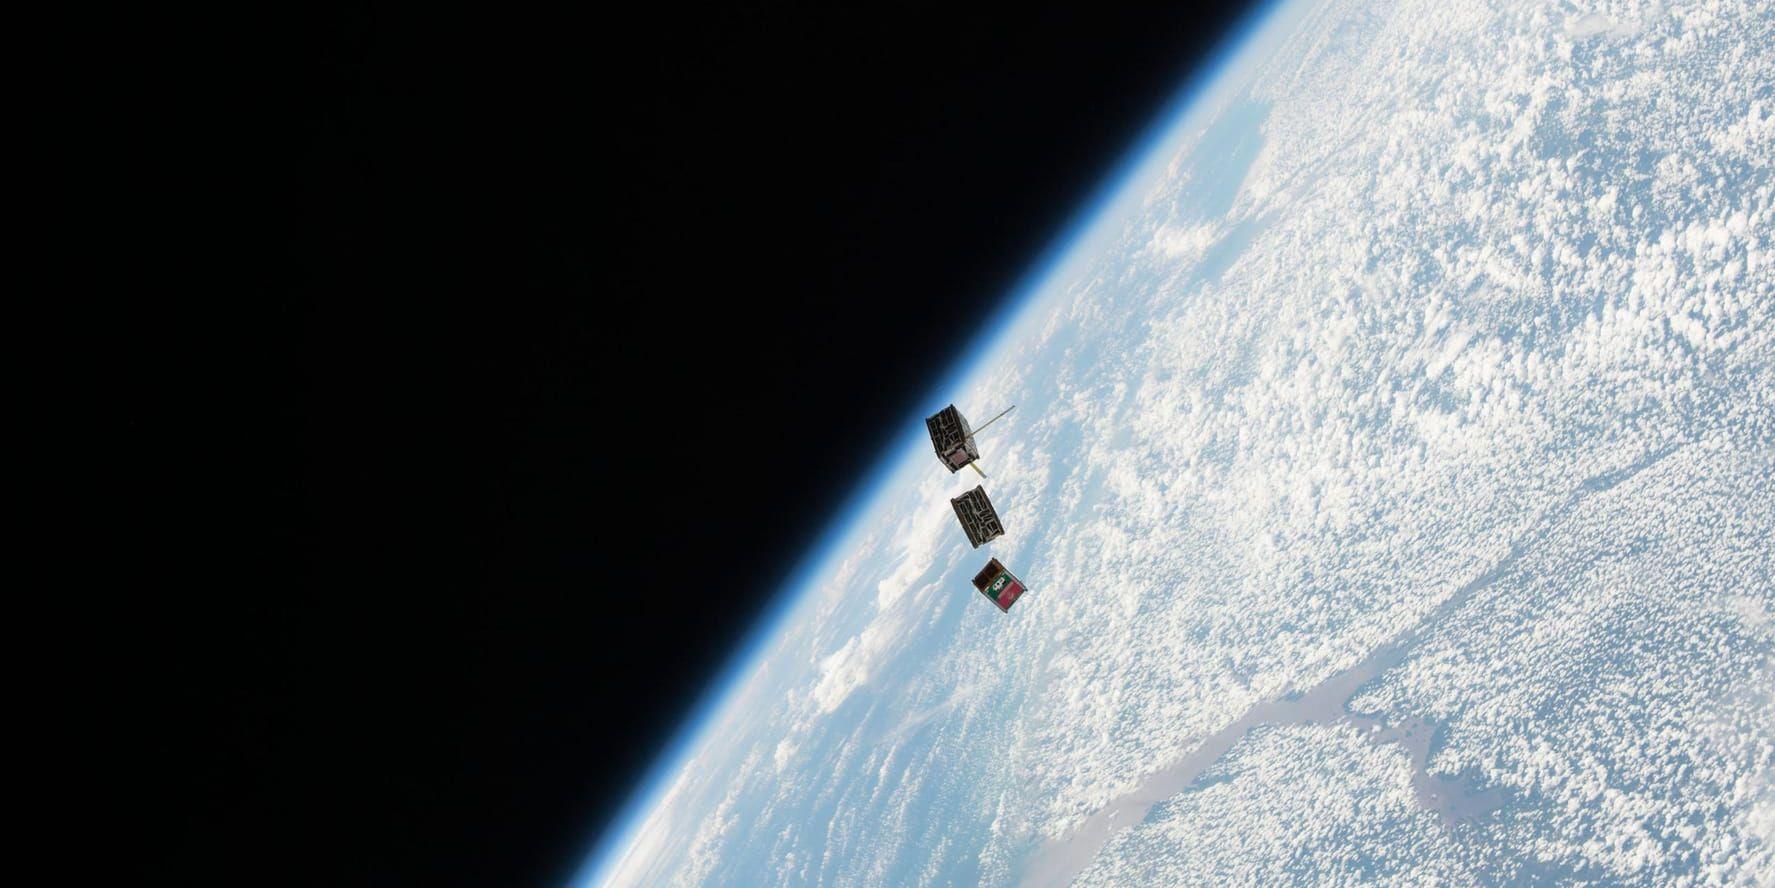 Några kubsatelliter skjuts ut från rymdstationen ISS. Ett nytt nanosatellitlab invigs i Kiruna i dag.